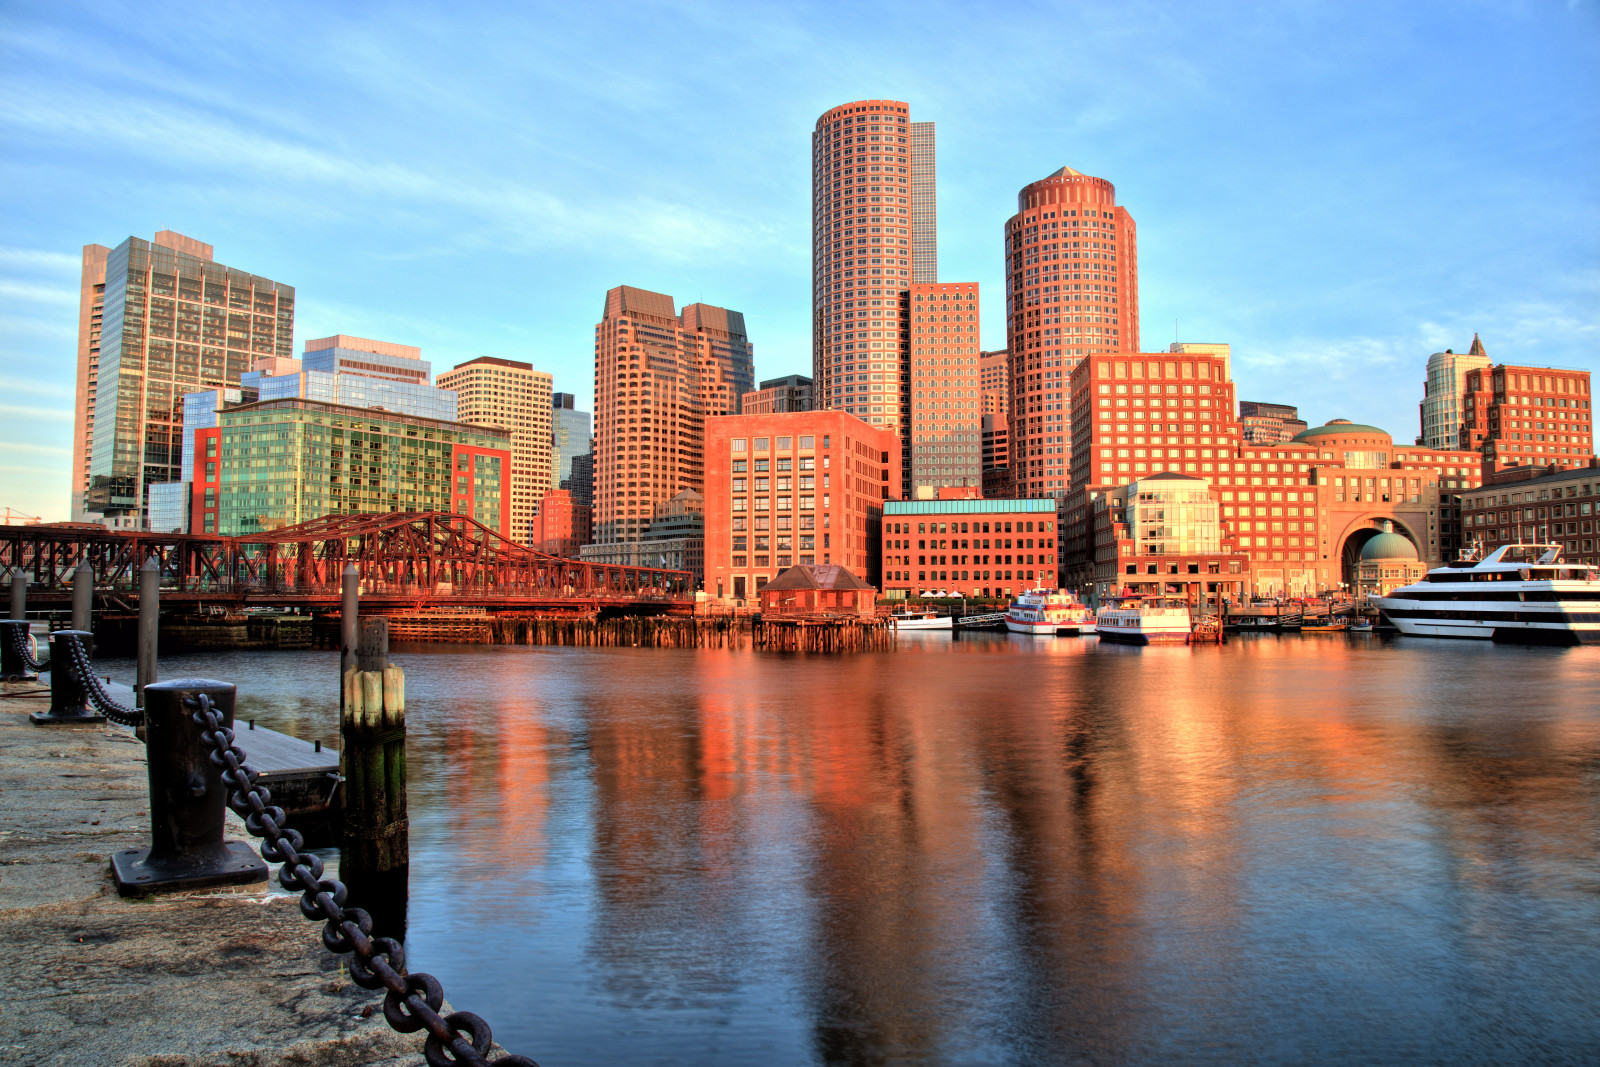 อ่าว, สะพาน, อาคาร, เดินเล่น, ท่าเรือ, เมืองบอสตัน, แมสซาชูเซต, ท่าเรือบอสตัน